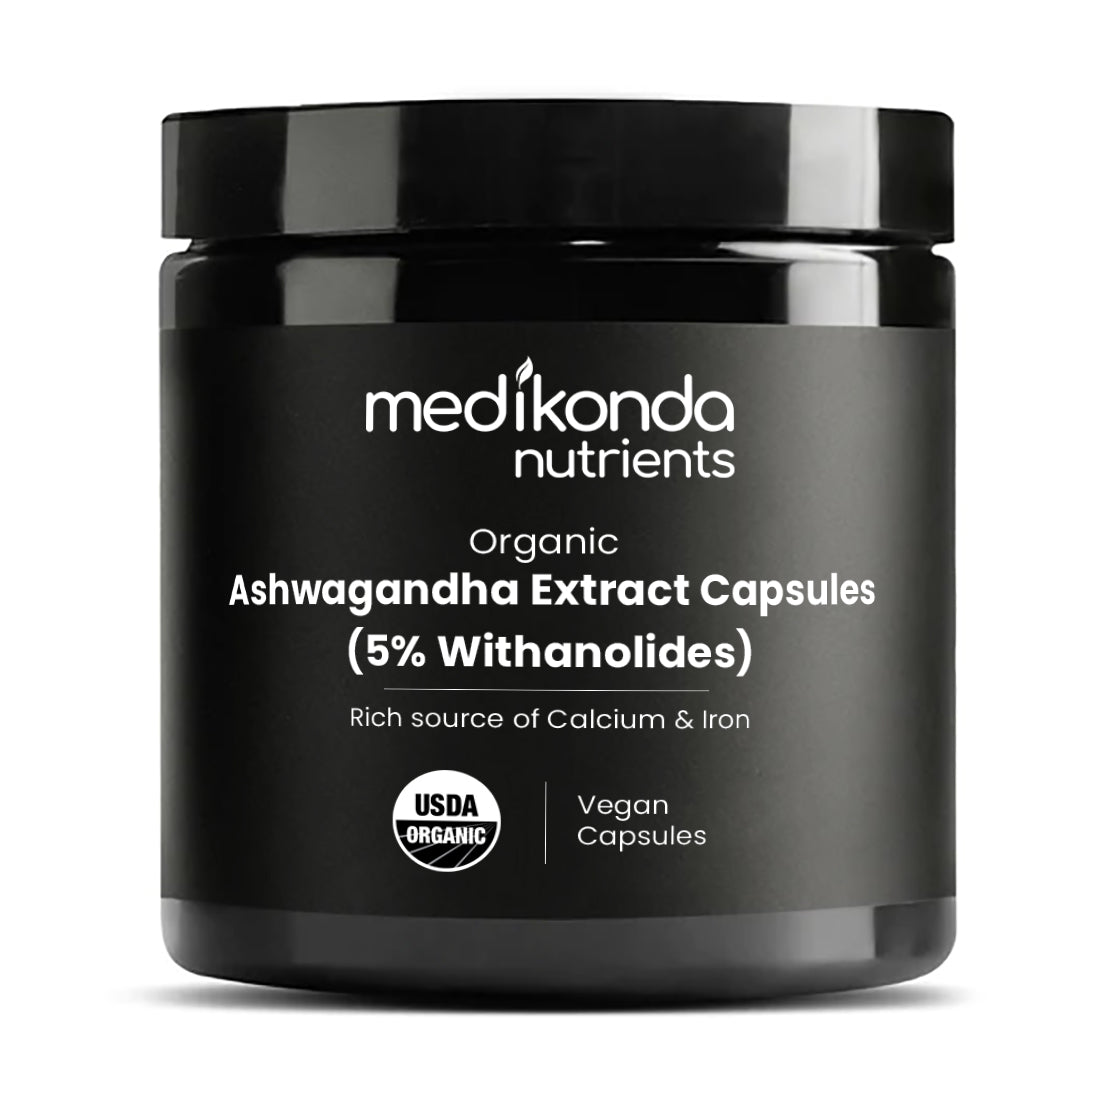 Ashwagandha Extract Capsules (5% Withanolides)